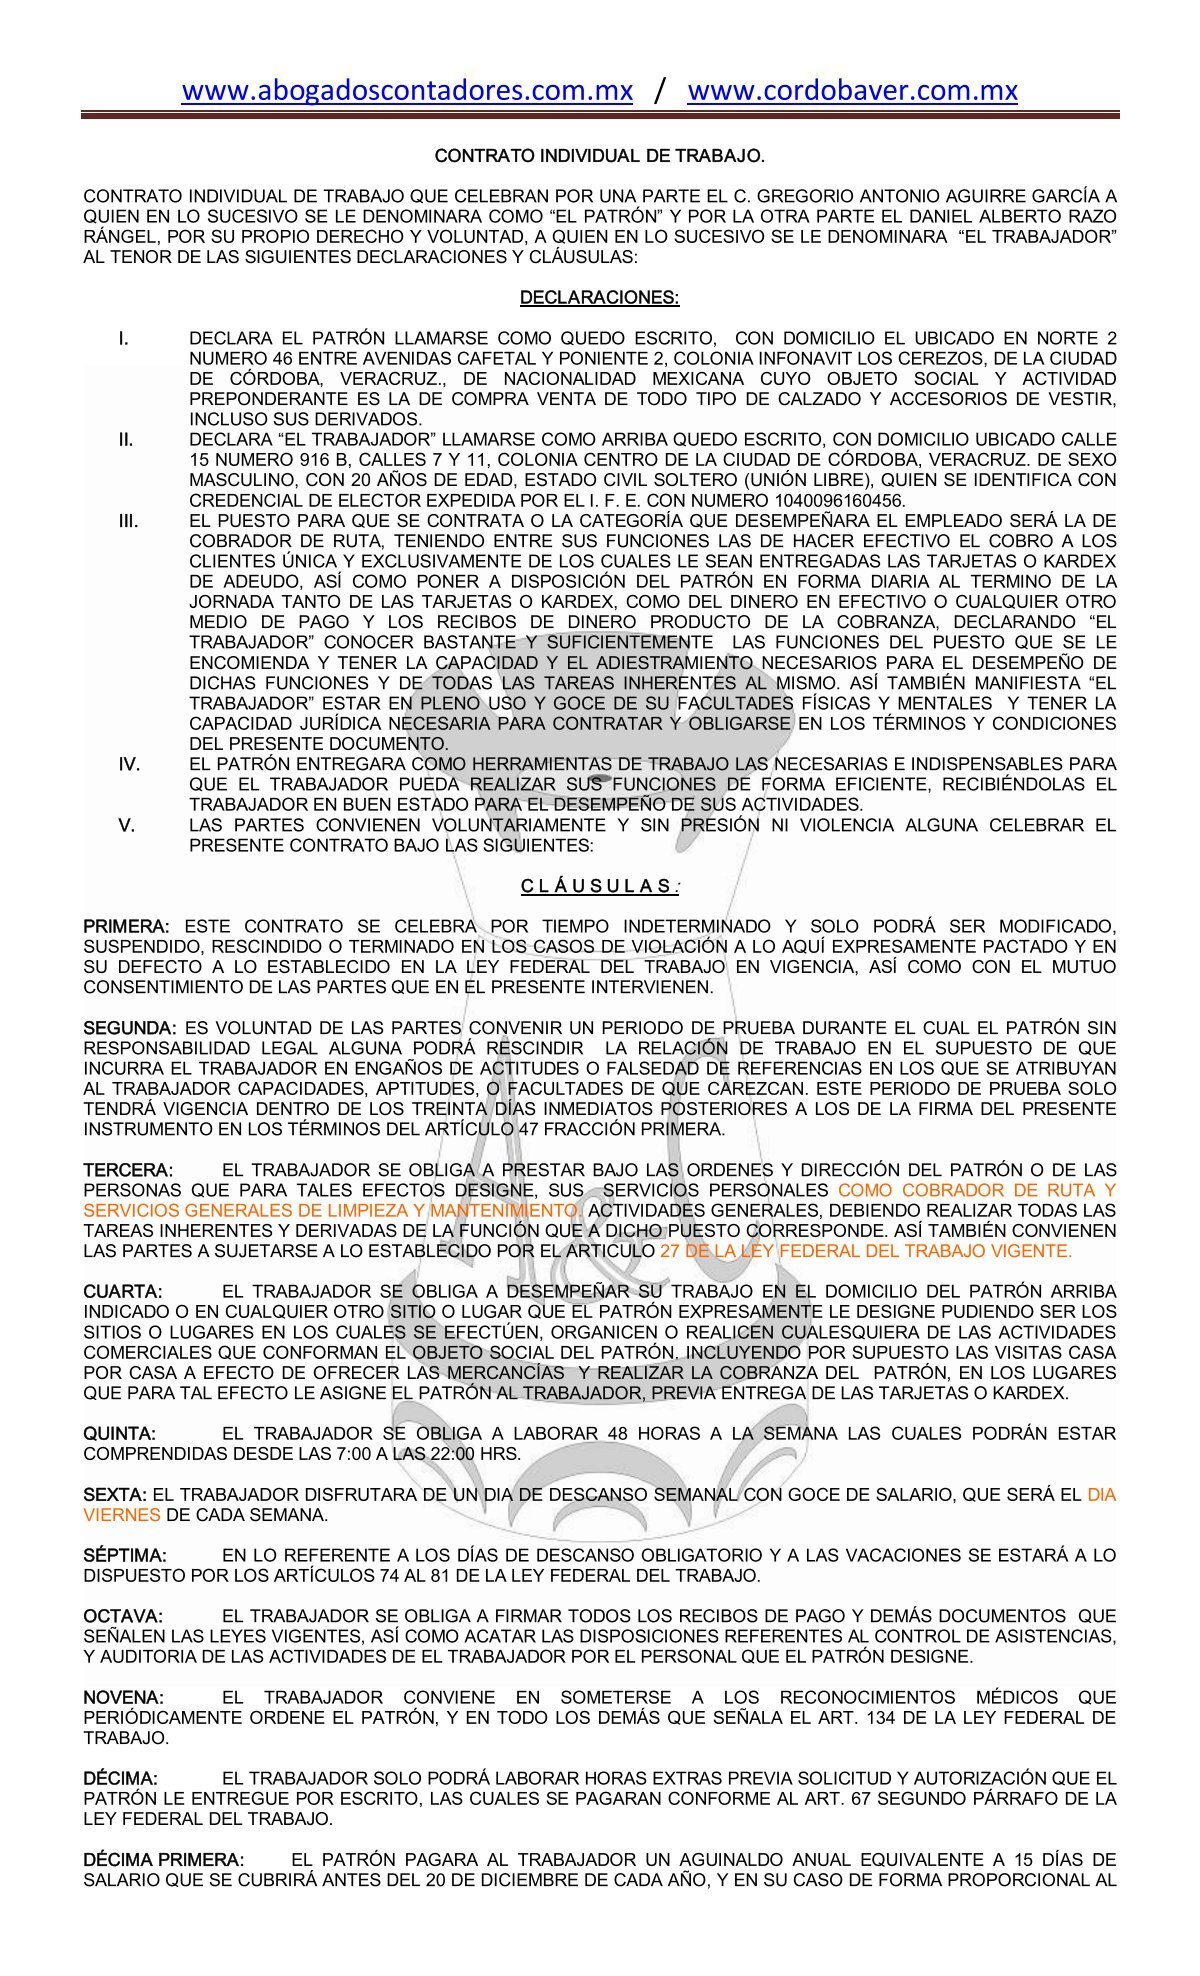 Contrato Individual de Trabajo Cobrador - abogadoscontadores ...